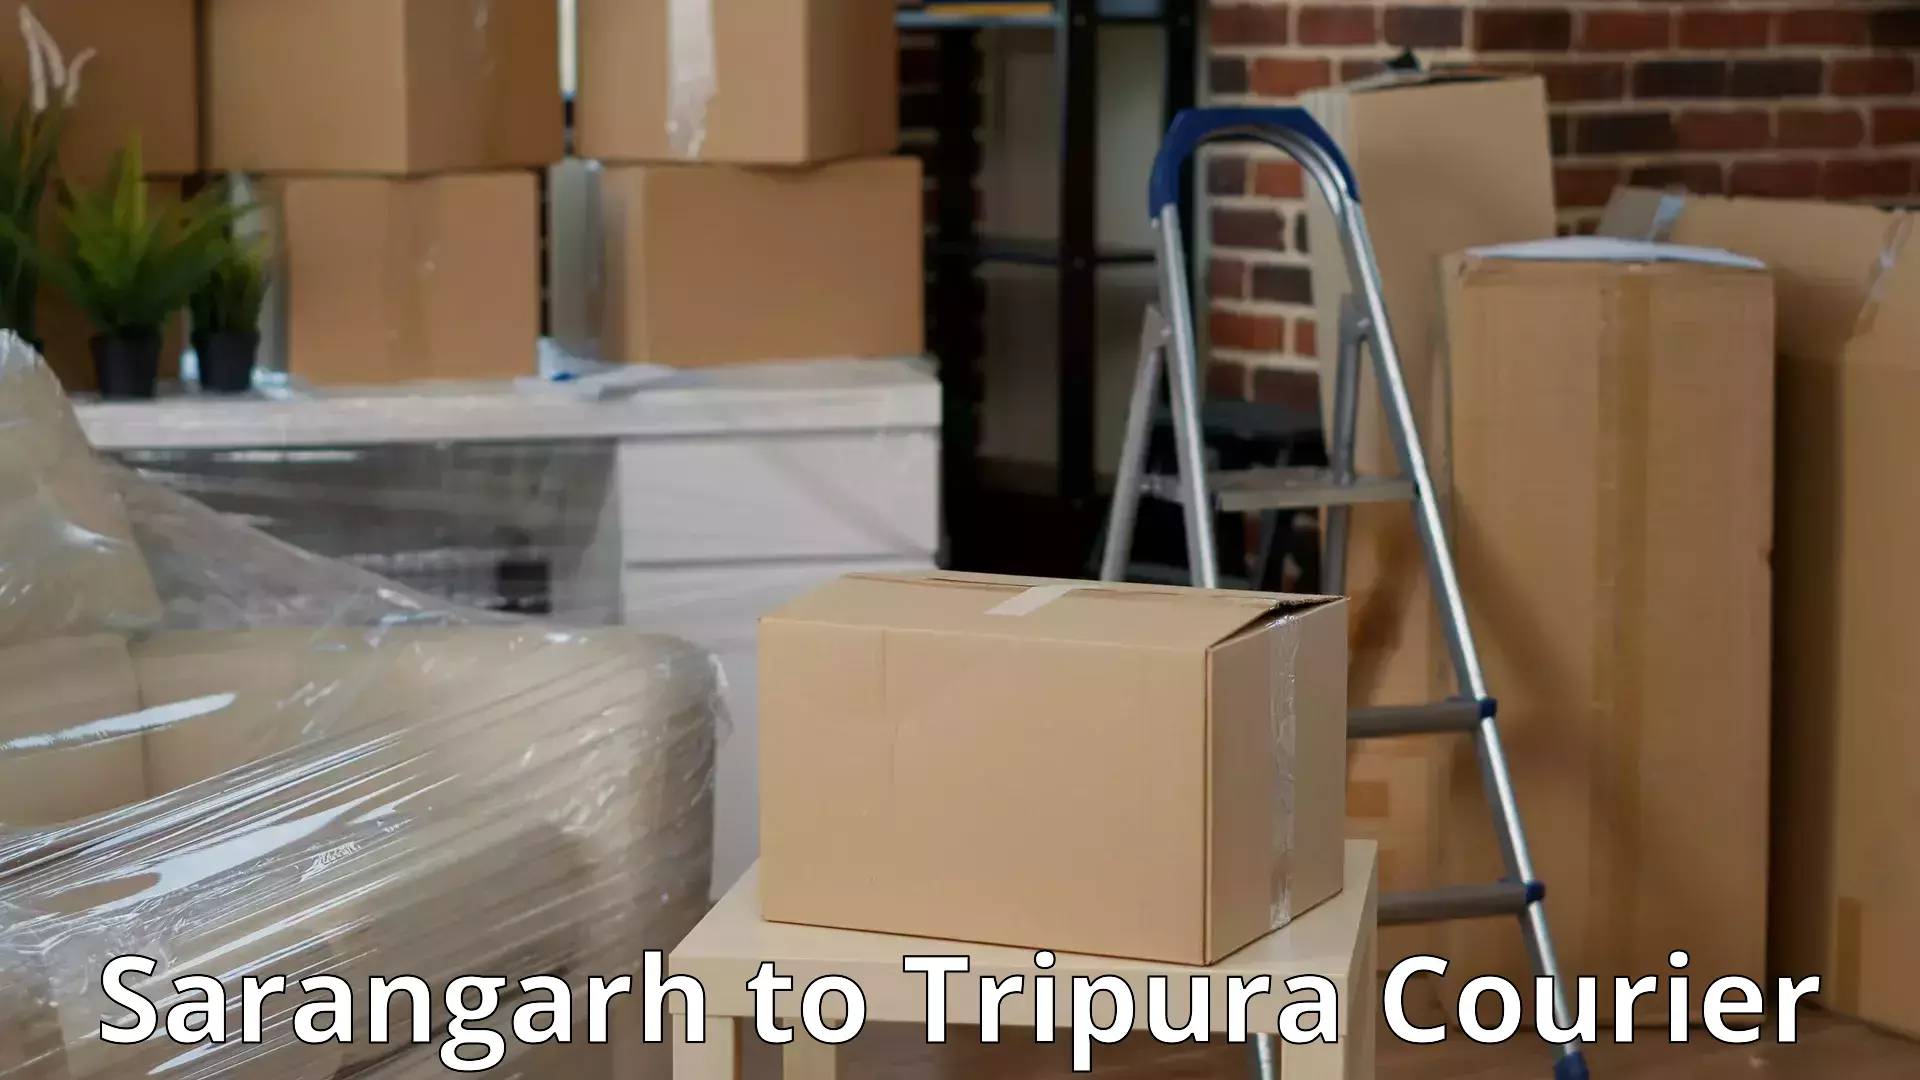 Moving and packing experts Sarangarh to Sonamura